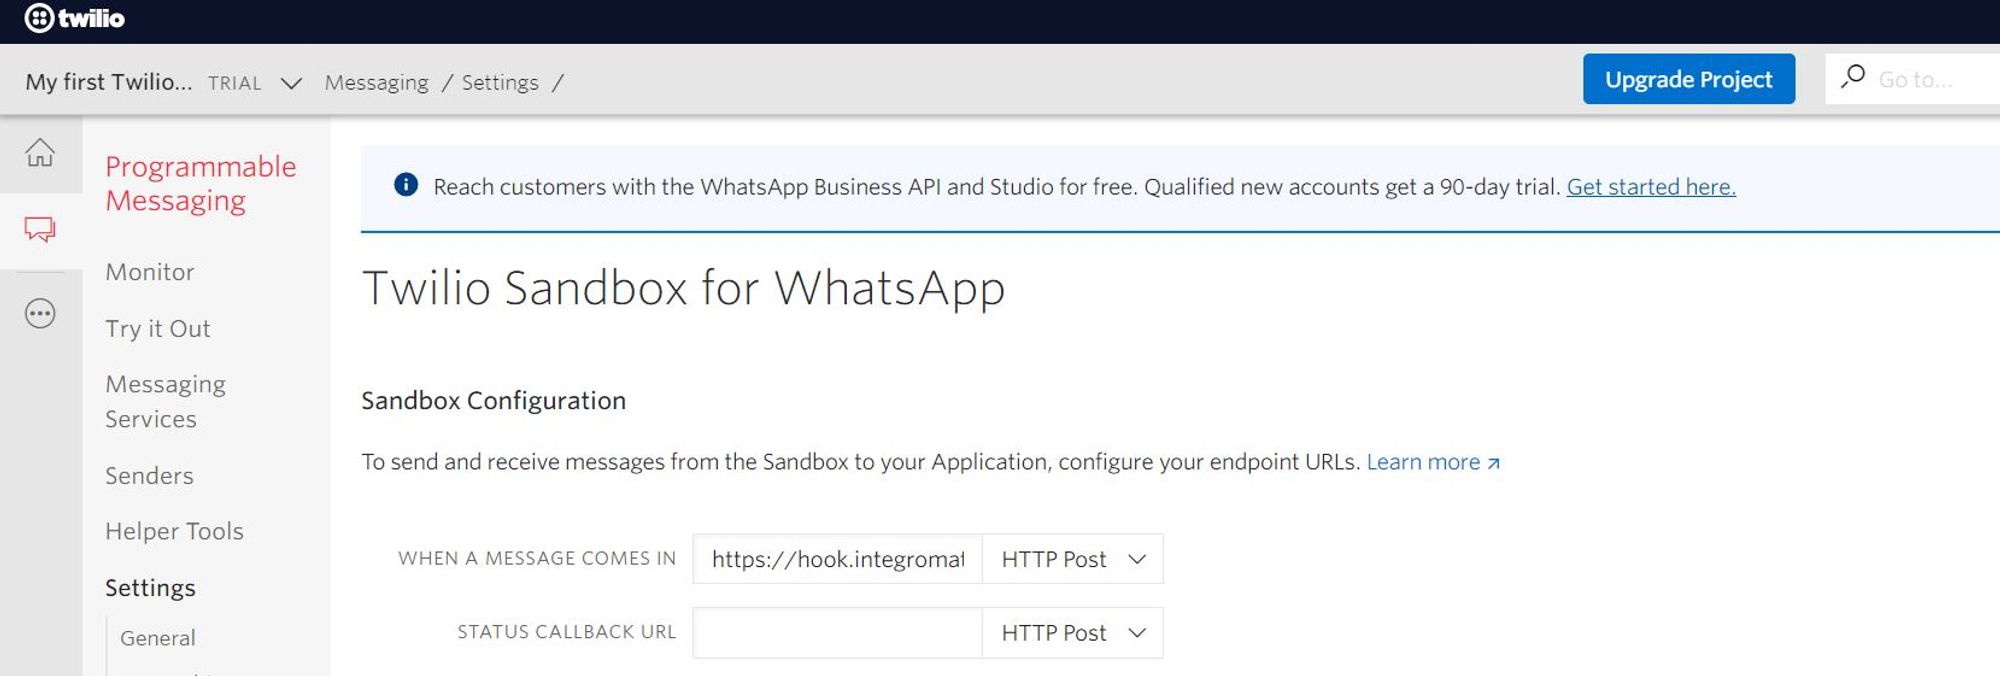 Twillio's Dashboard for WhatsApp Sandbox